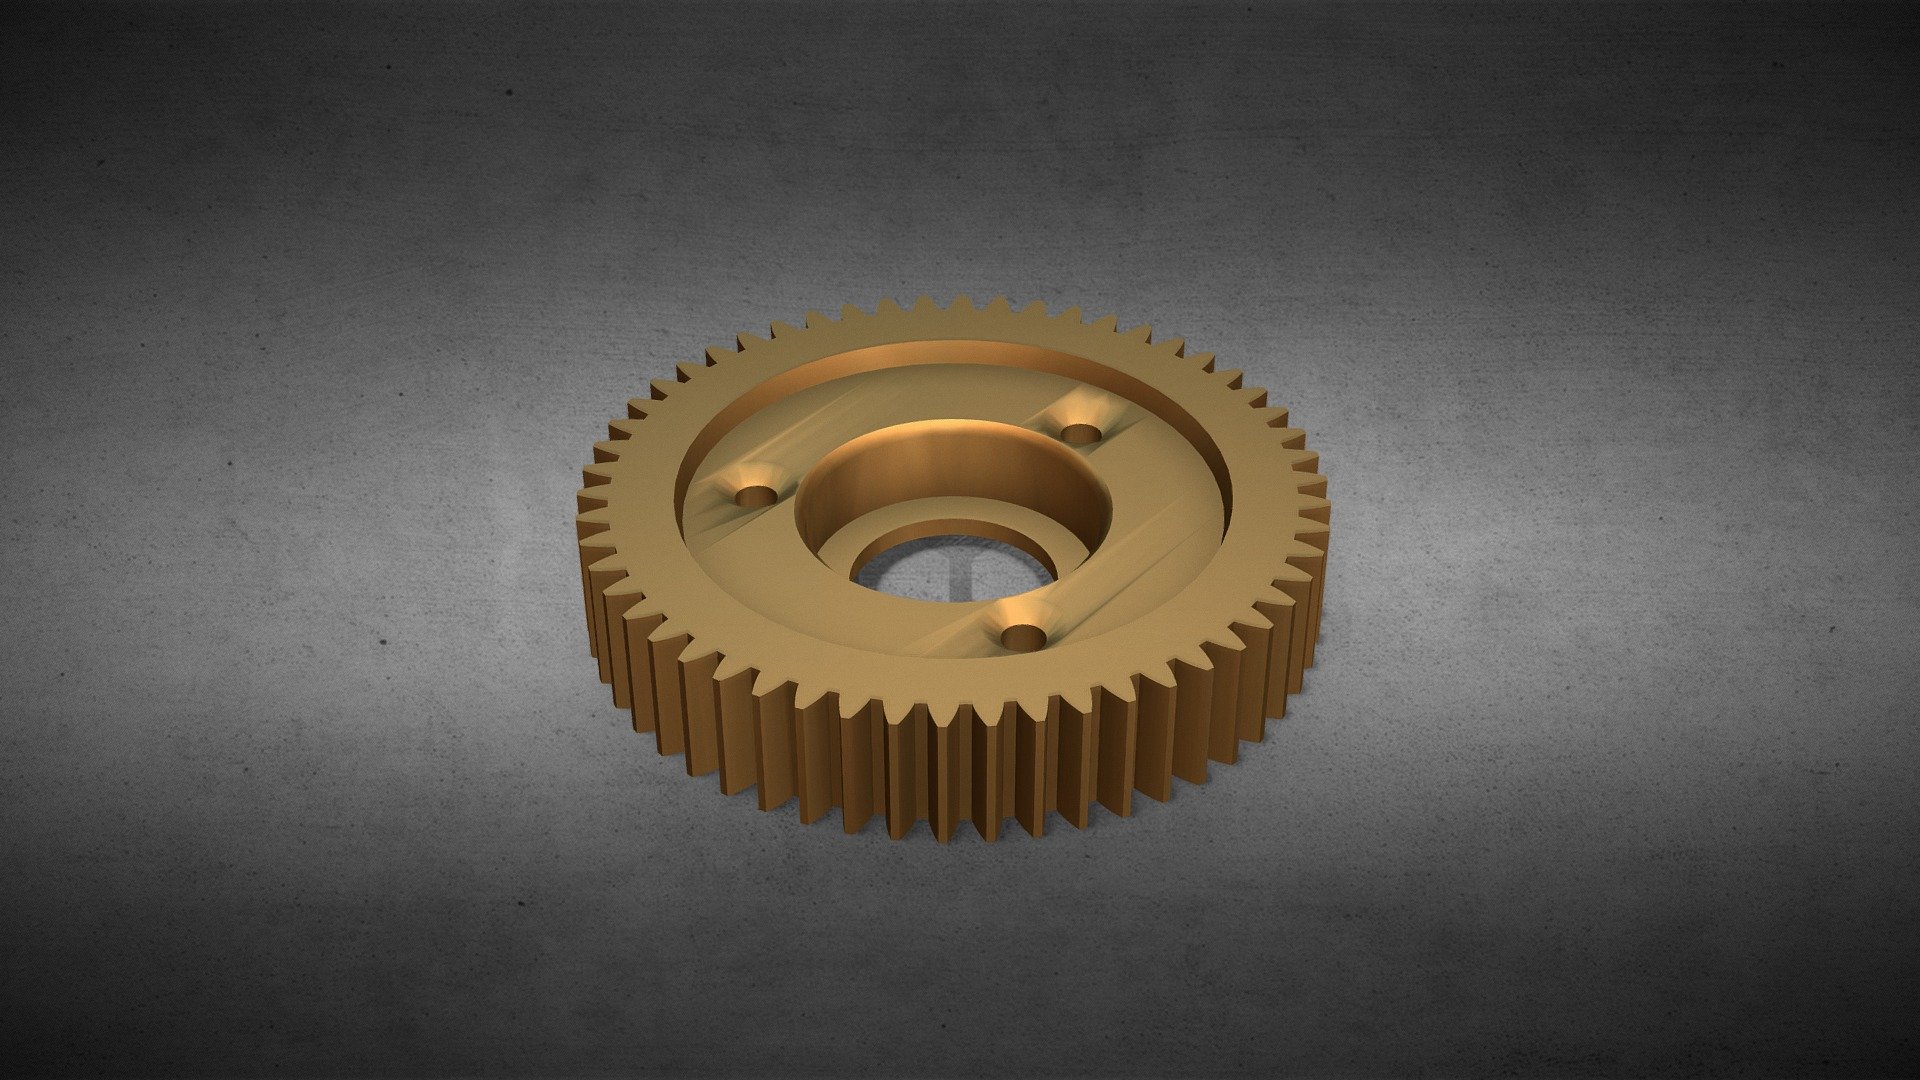 Gear for ebike HUB motor MAC